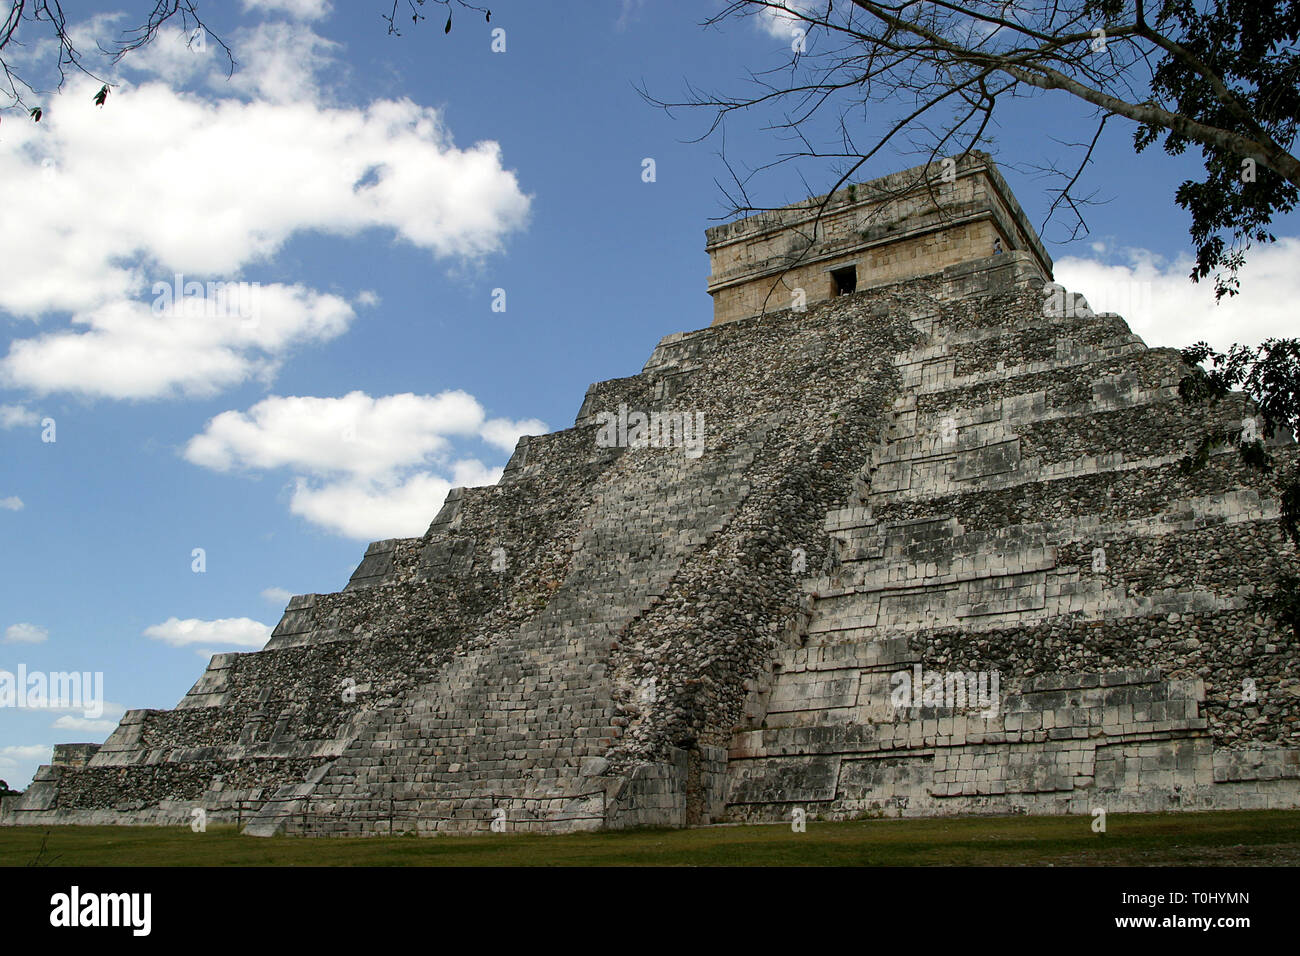 Templo de Kukulcan.  Zona arqueologica de Chichen Itza Zona arqueológica    Chichén ItzáChichén Itzá maya: (Chichén) Boca del pozo;   de los (Itzá) brujos de agua.   Es uno de los principales sitios arqueológicos de la   península de Yucatán, en México, ubicado en el municipio de Tinum.  *Photo:©Francisco* Morales/DAMMPHOTO.COM/NORTEPHOTO    * No * sale * a * third * Stock Photo